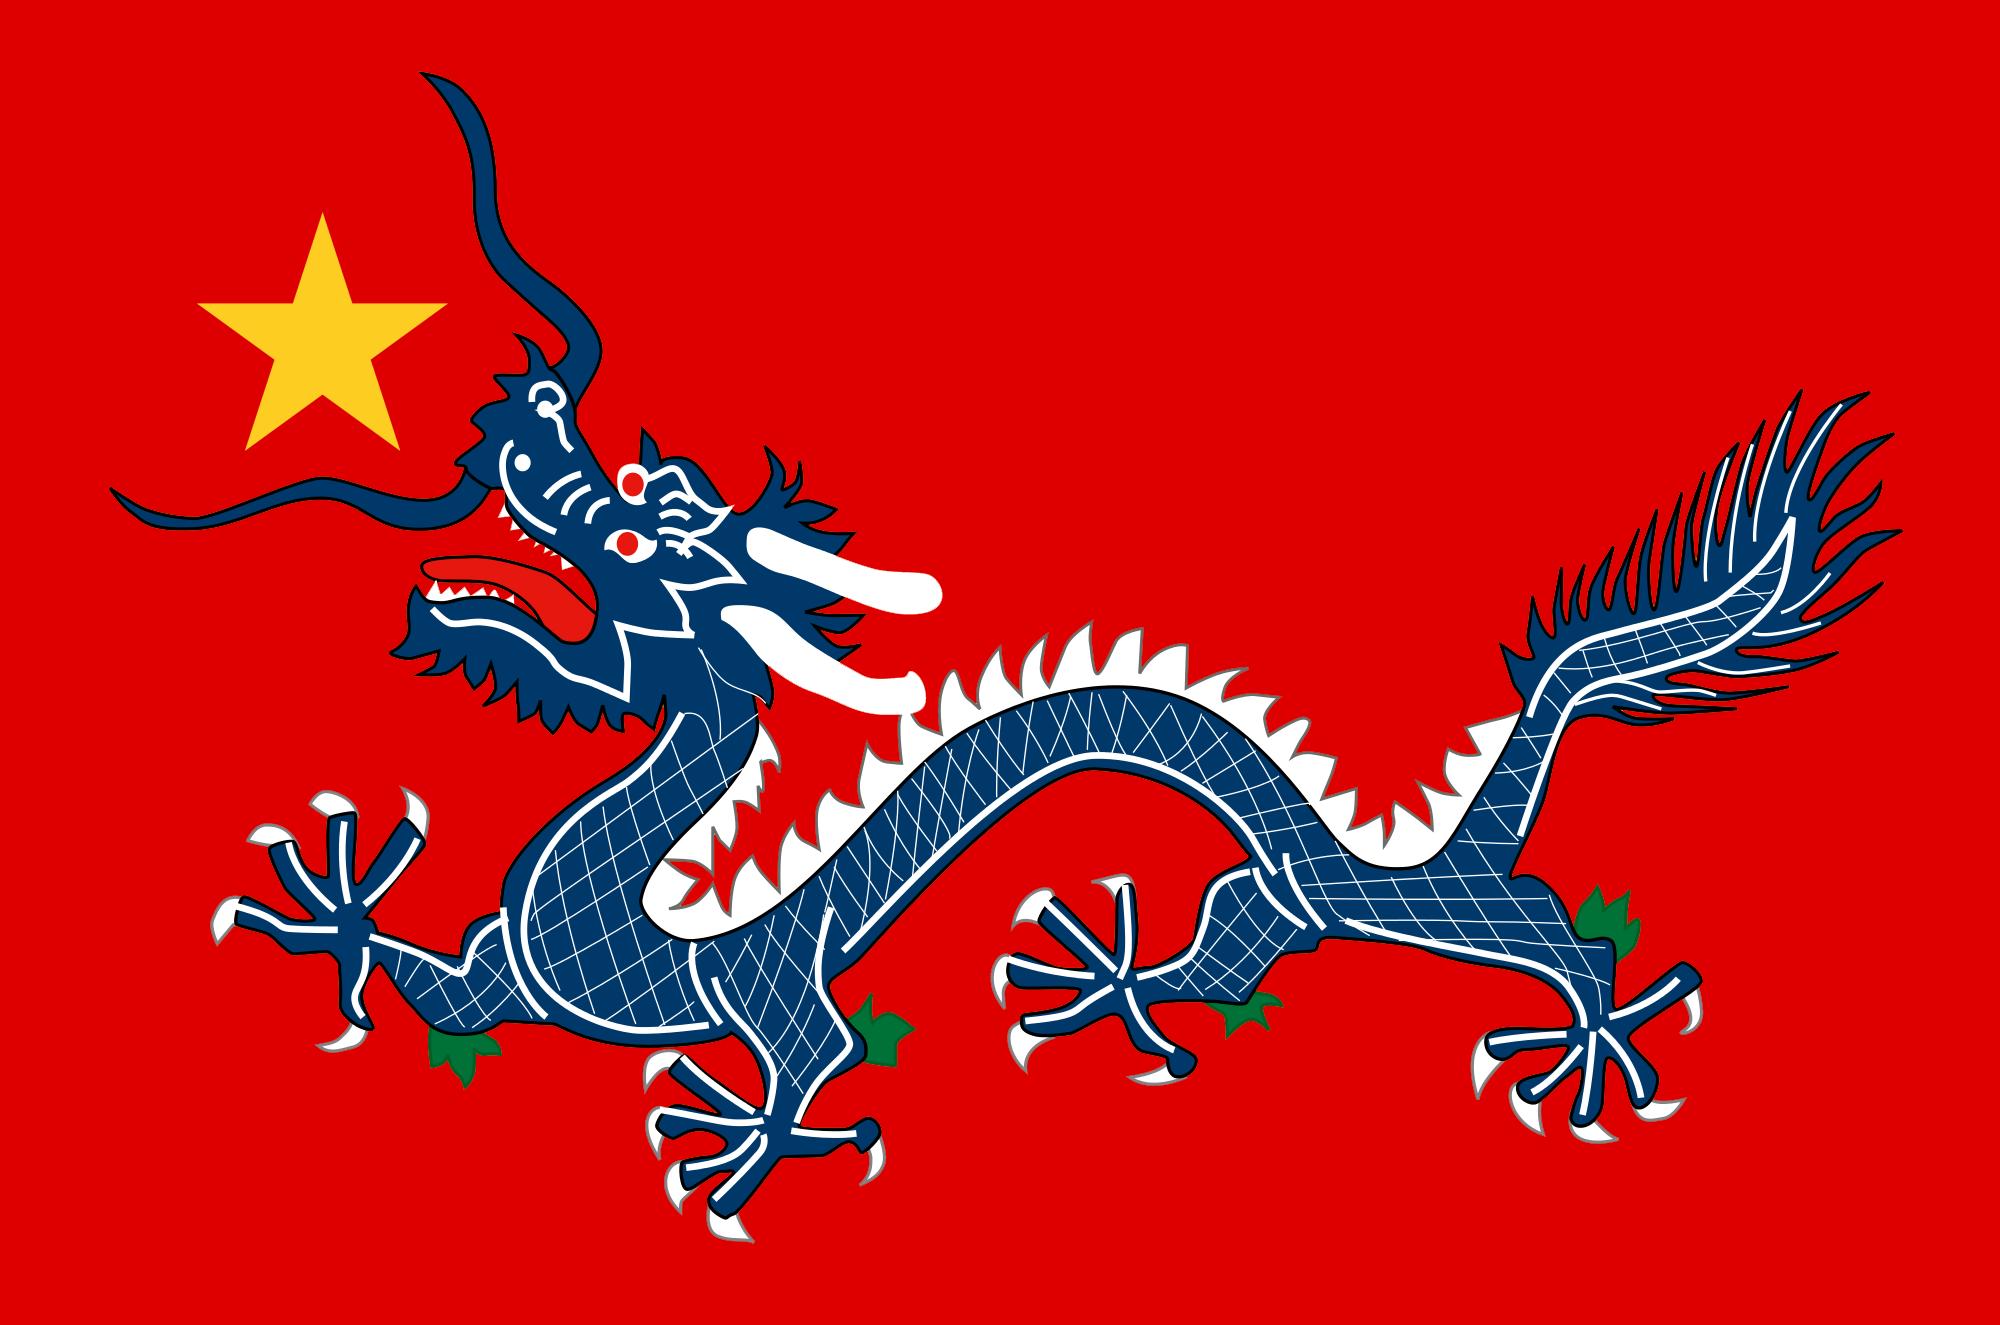 Chinese Red Star Logo - FULLCOMMUNIST Qing